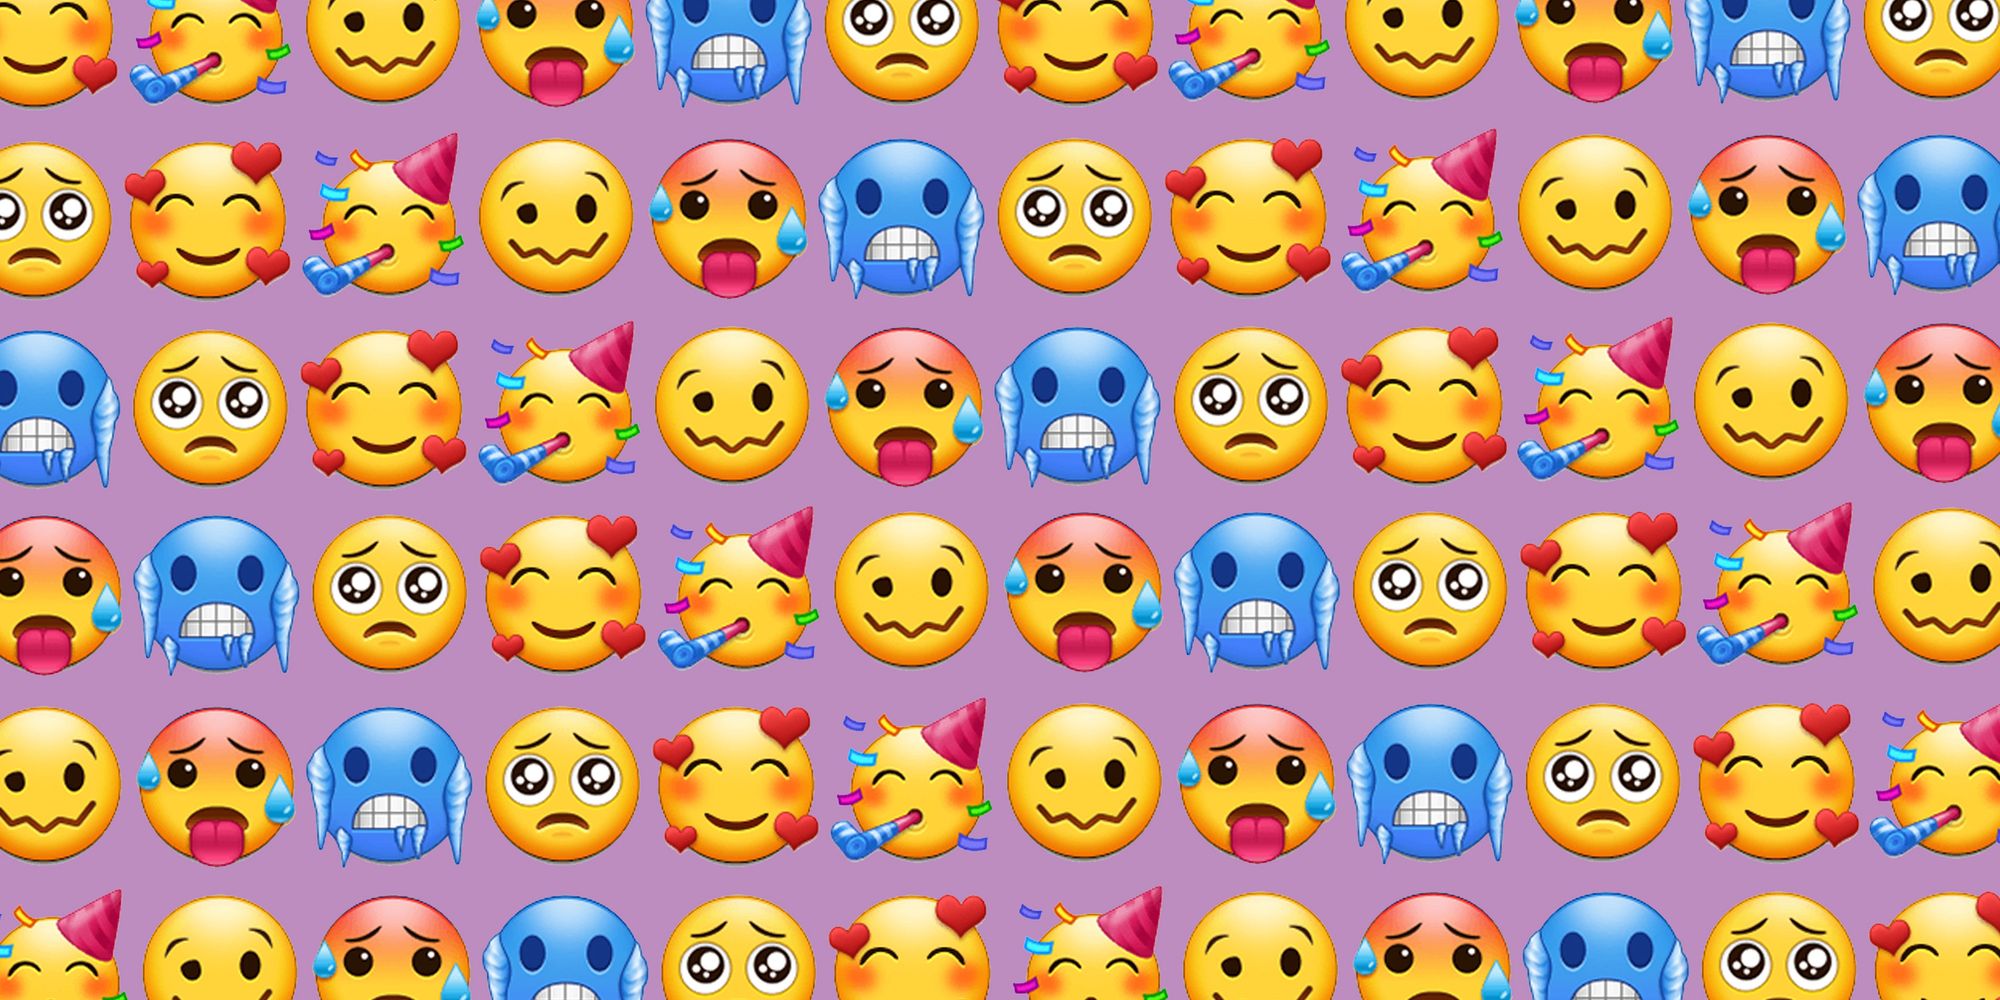 Samsung Experience 9.5 Emoji Changelog